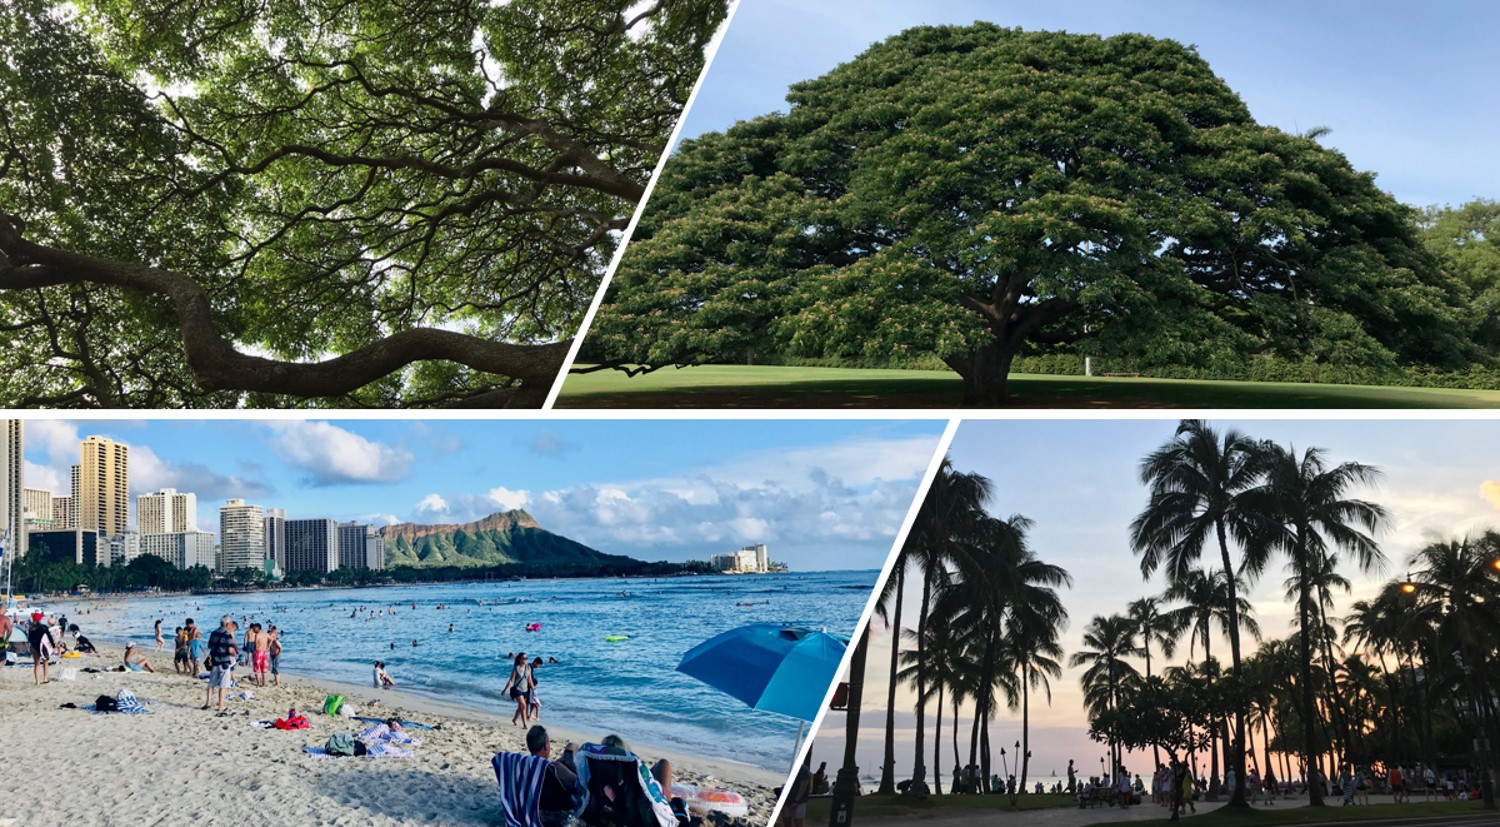 ハワイ神話には、海や木々がたくさん登場します。神話を愉しみながらも、昔から延々と美しい自然が引き継がれてきたことを実感することができます。